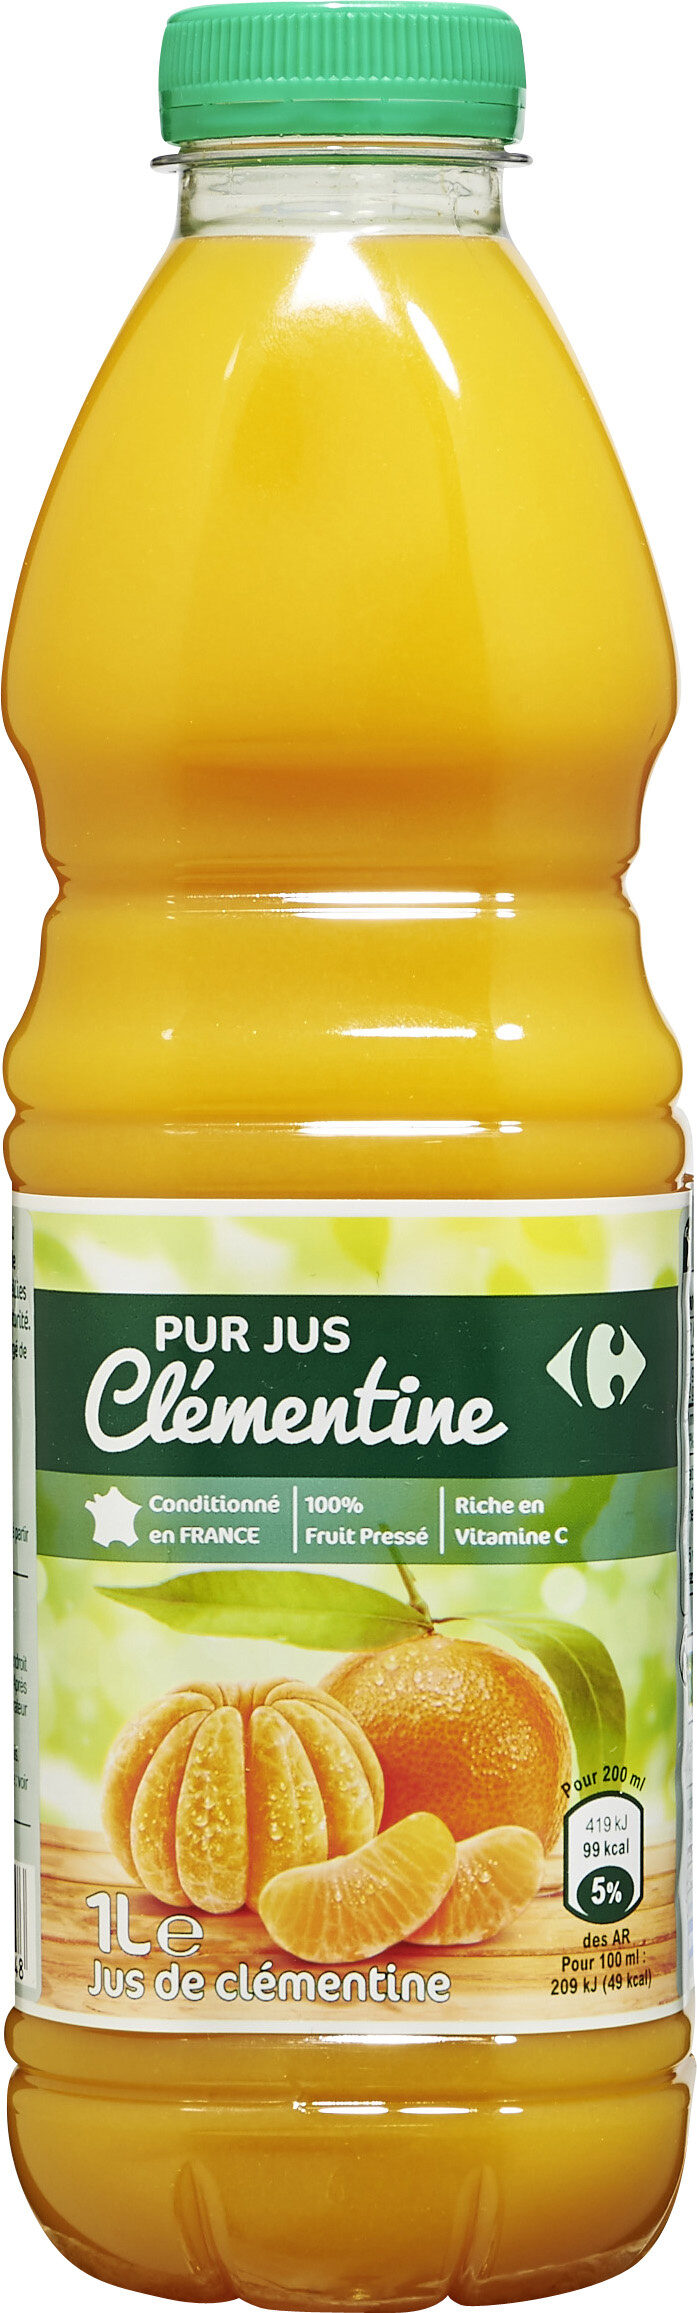 Clémentine 100 % Pur Fruit Pressé - Product - fr